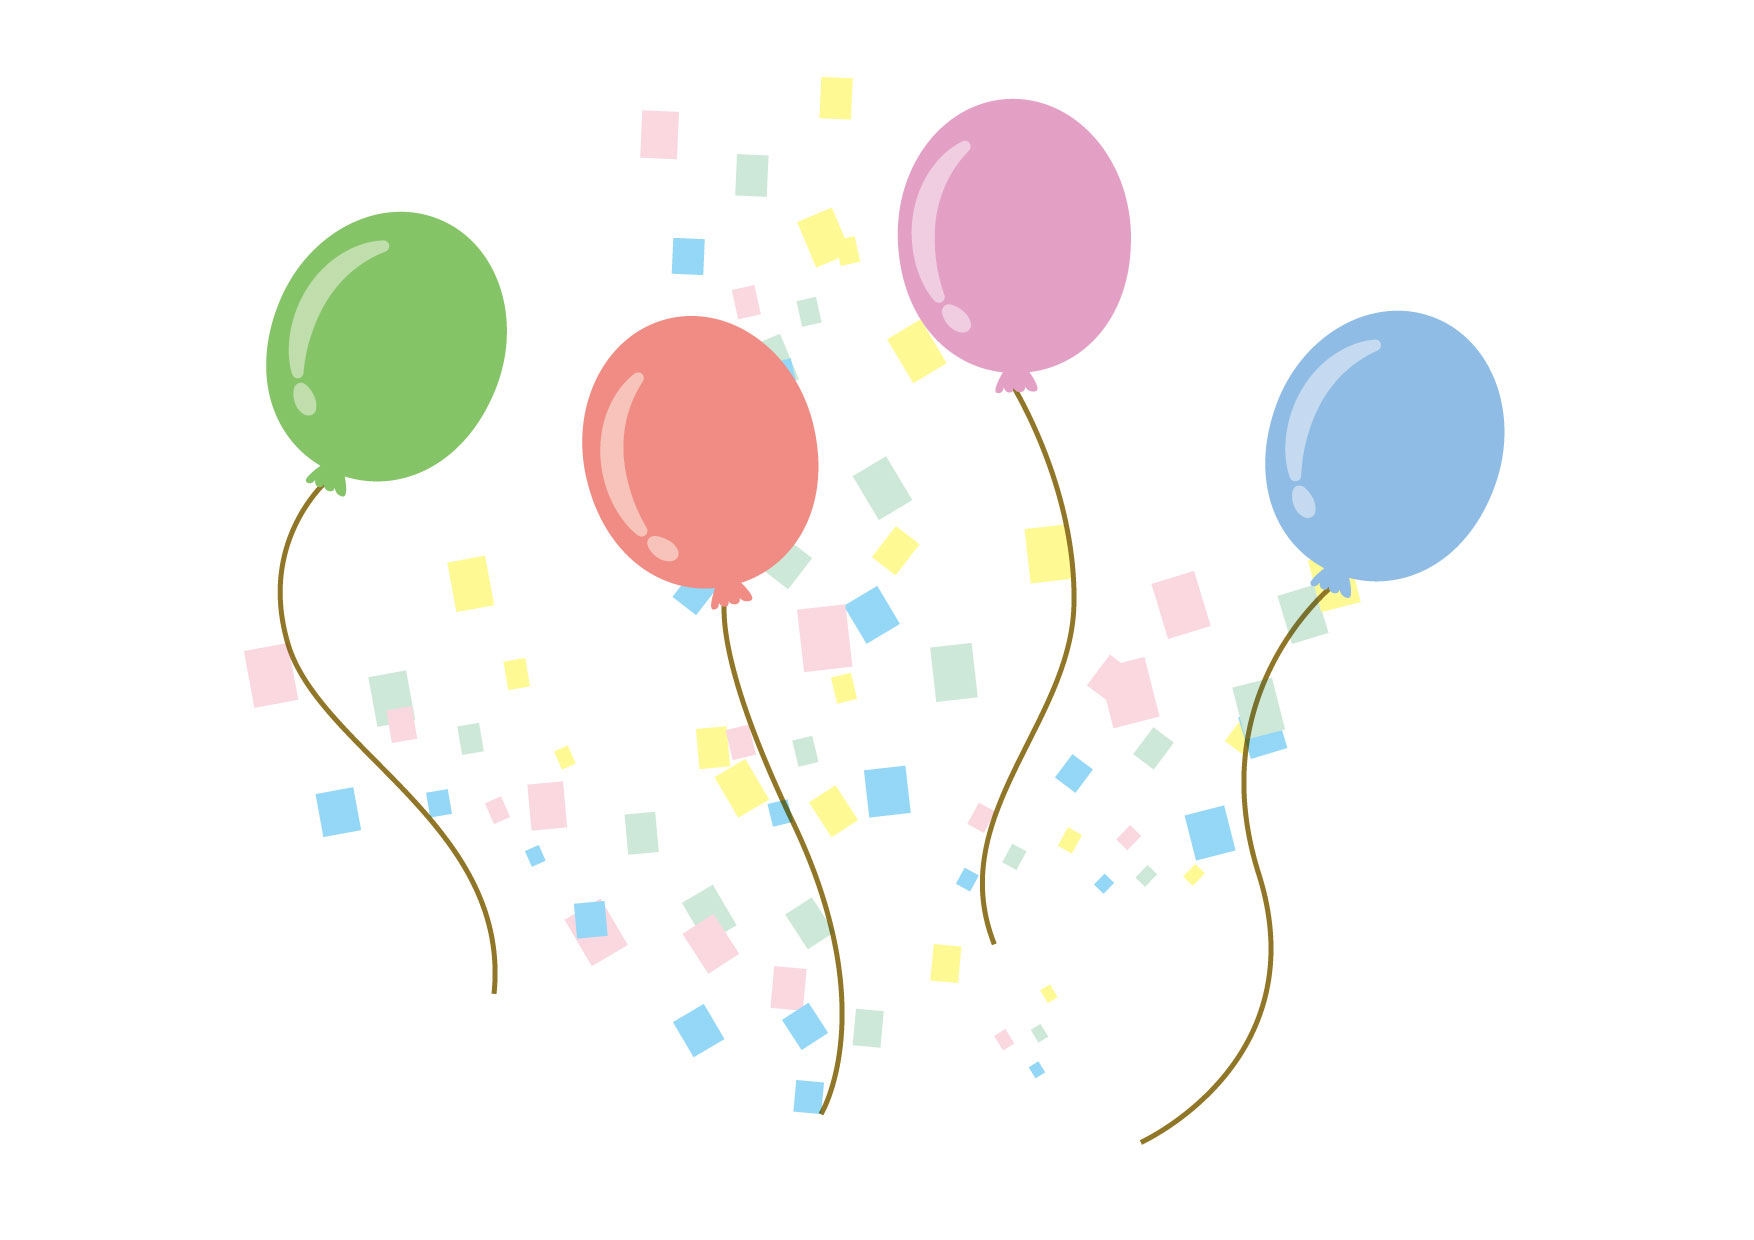 可愛いイラスト無料 風船 紙吹雪 Free Illustration Balloons Confetti 公式 イラスト素材 サイト イラストダウンロード